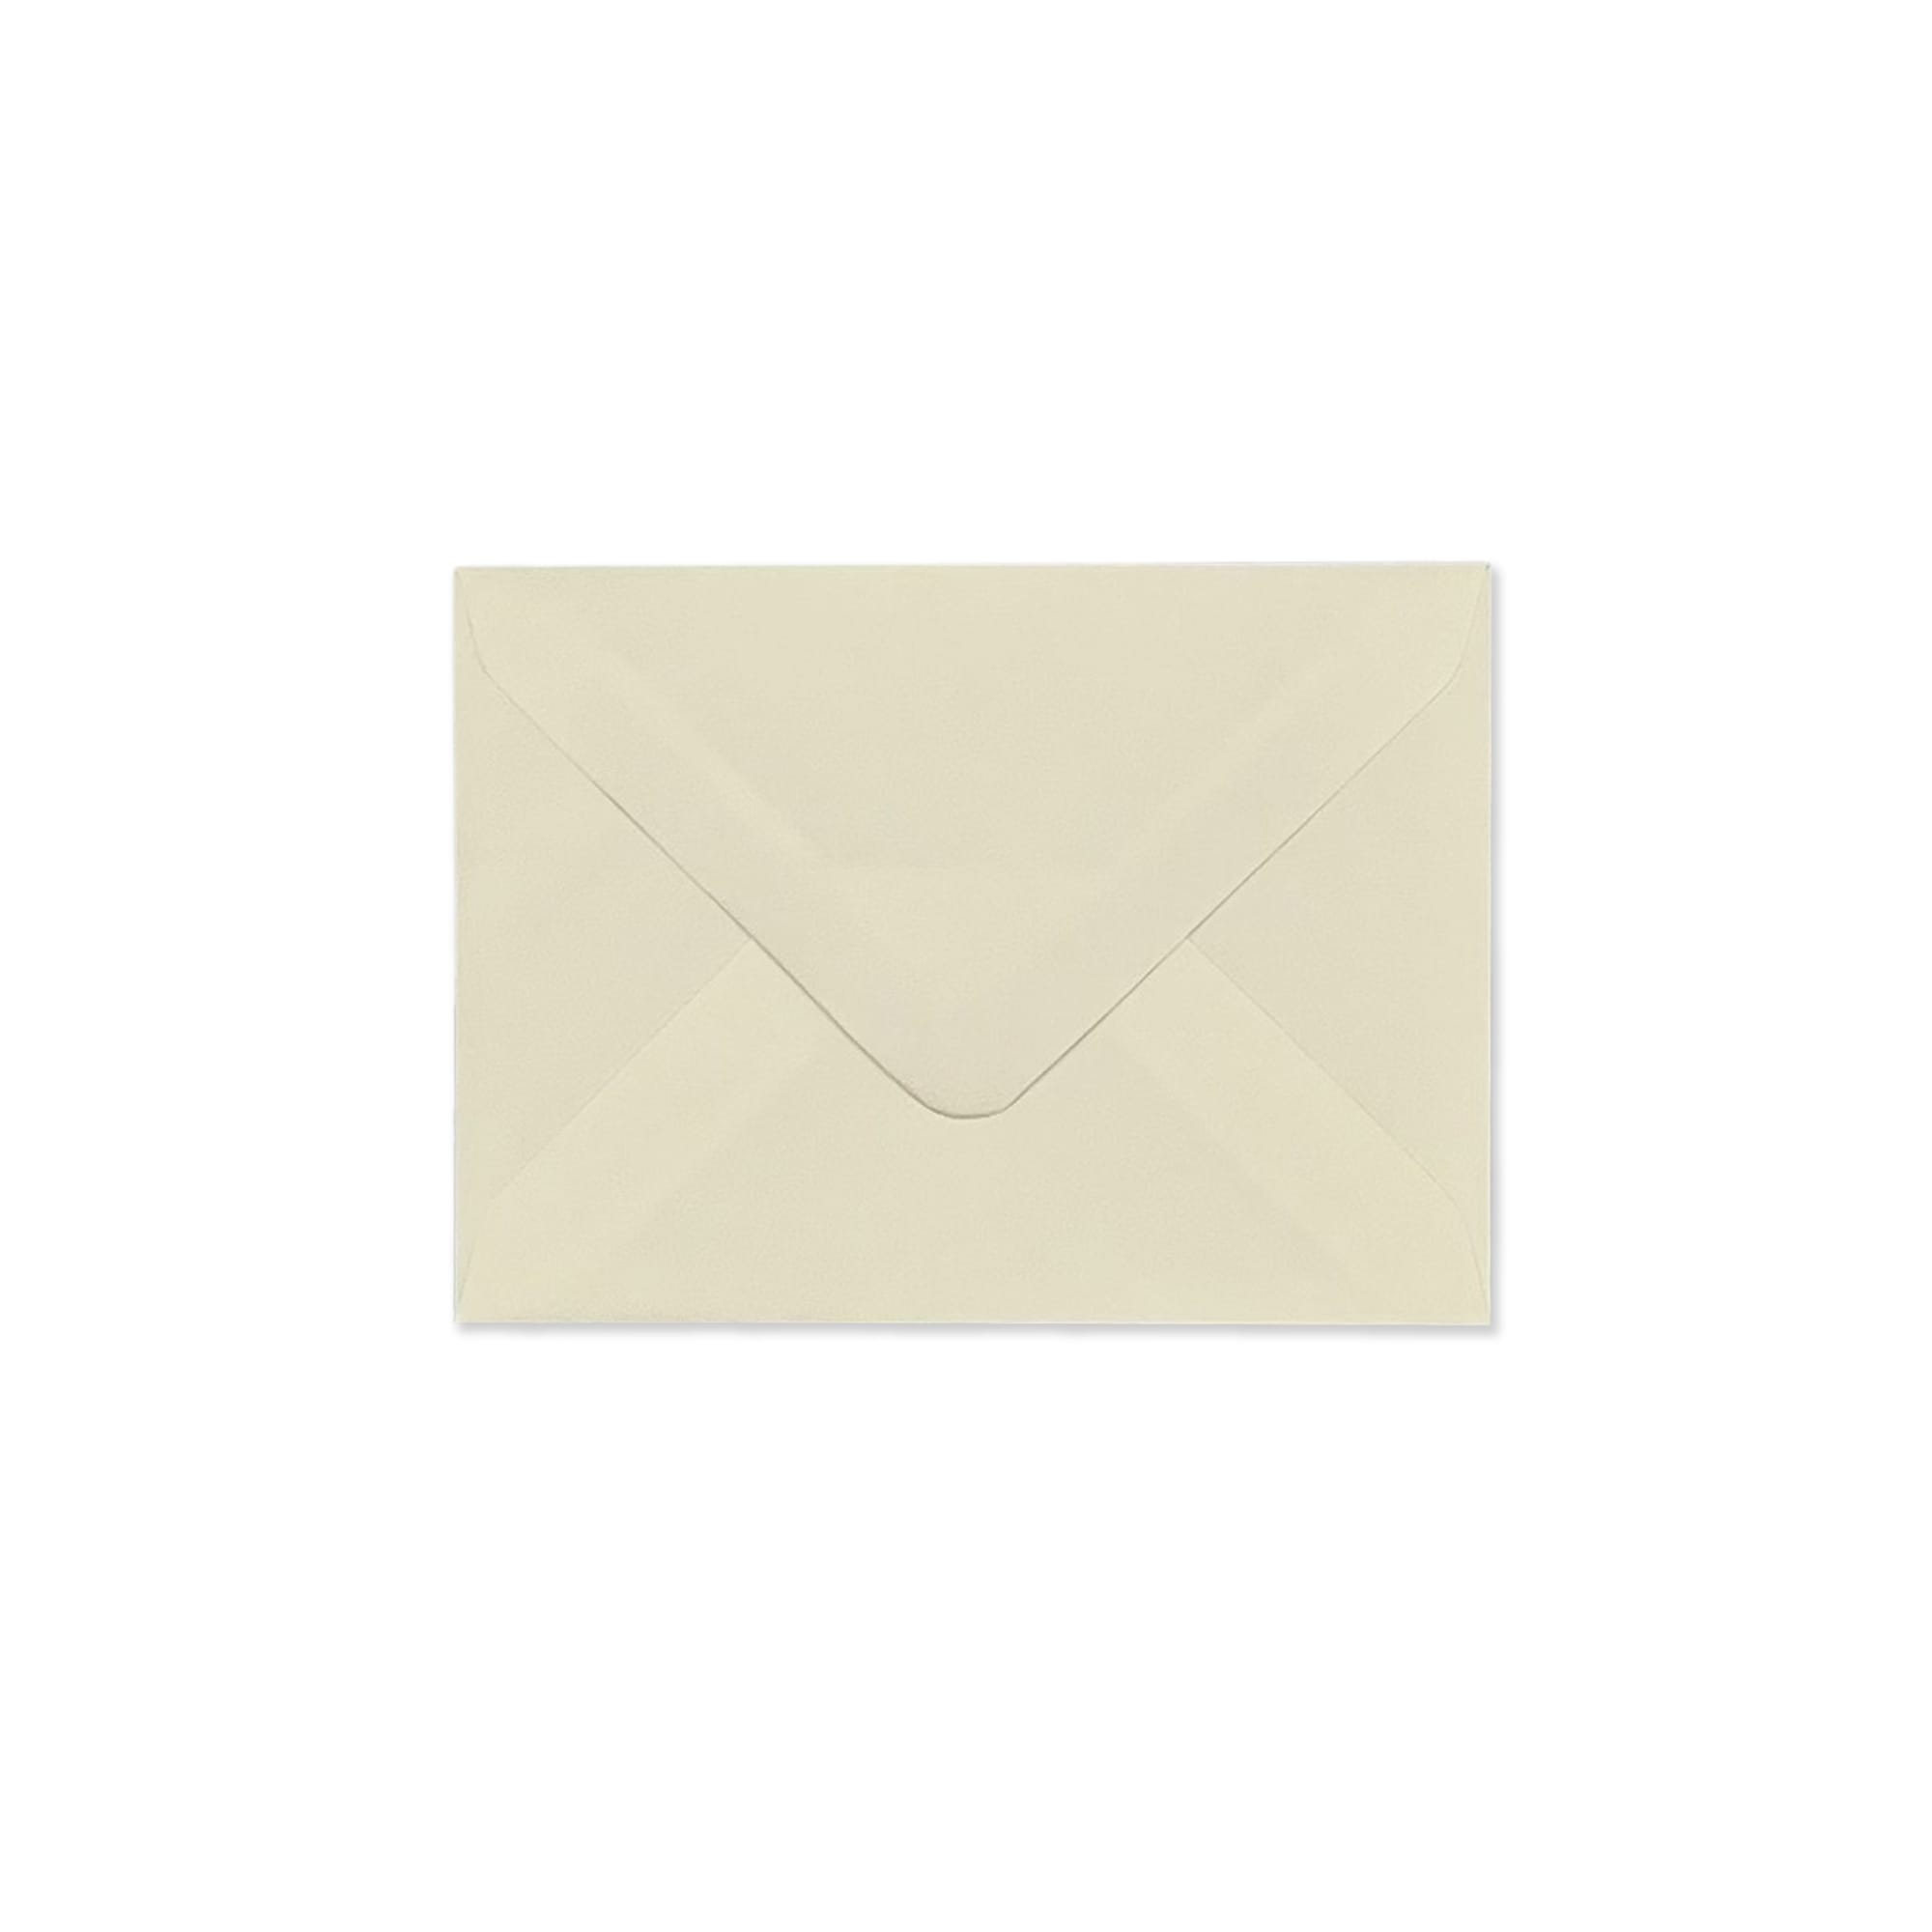 3.23 x 4.45 " Cream Laid Envelopes 68lb